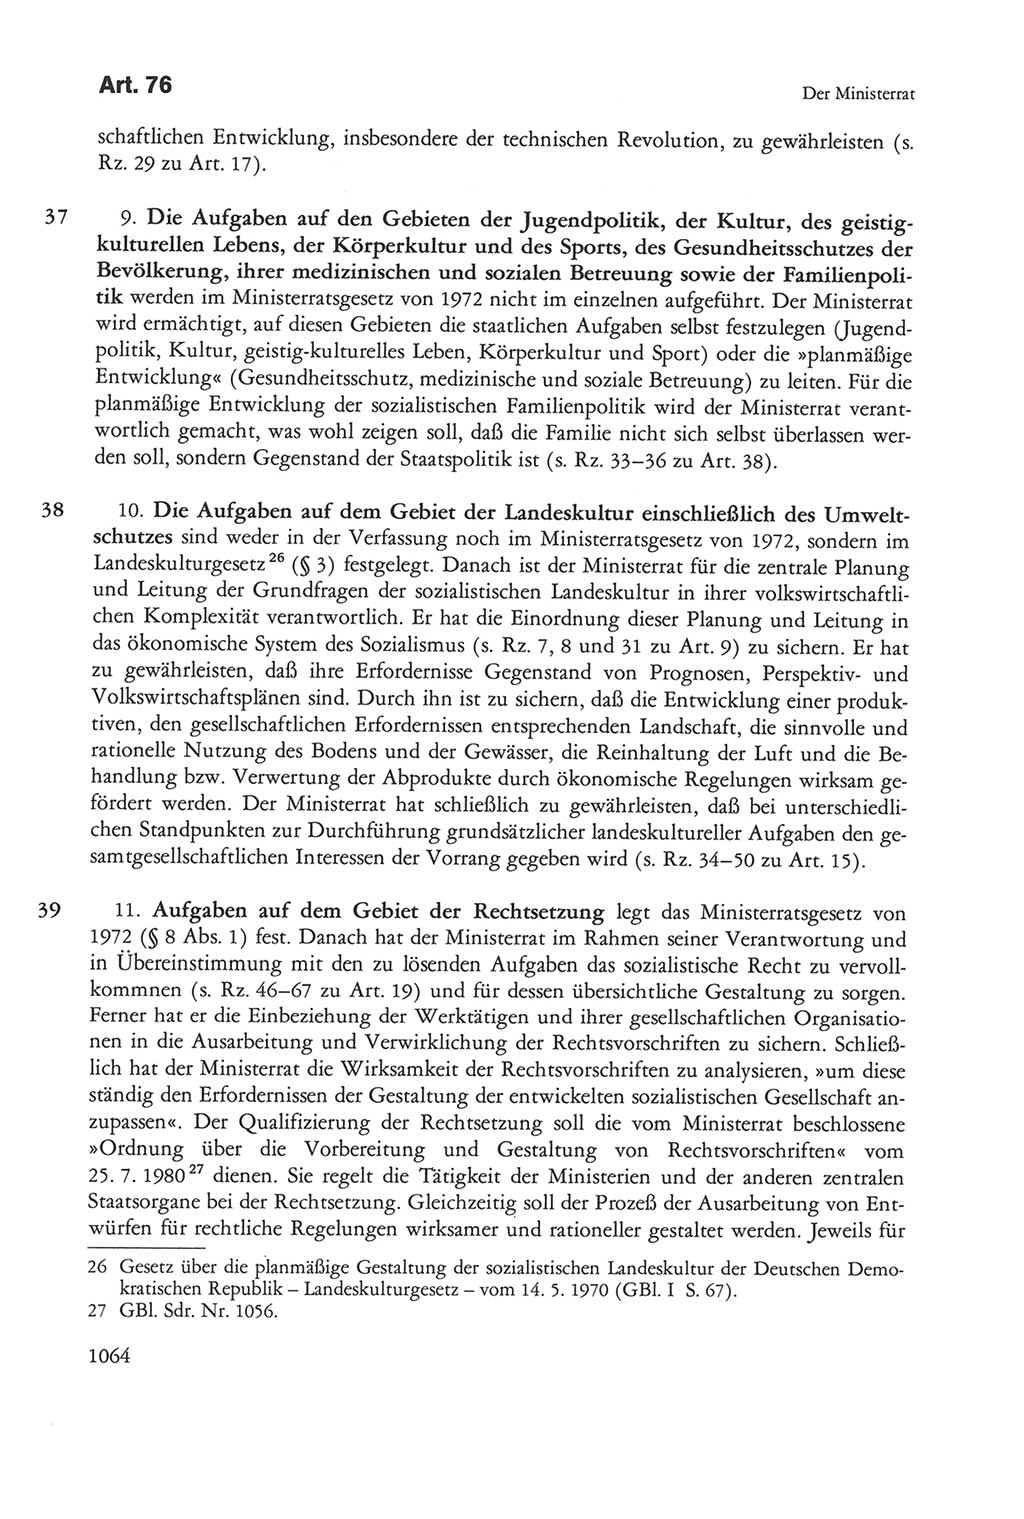 Die sozialistische Verfassung der Deutschen Demokratischen Republik (DDR), Kommentar mit einem Nachtrag 1997, Seite 1064 (Soz. Verf. DDR Komm. Nachtr. 1997, S. 1064)